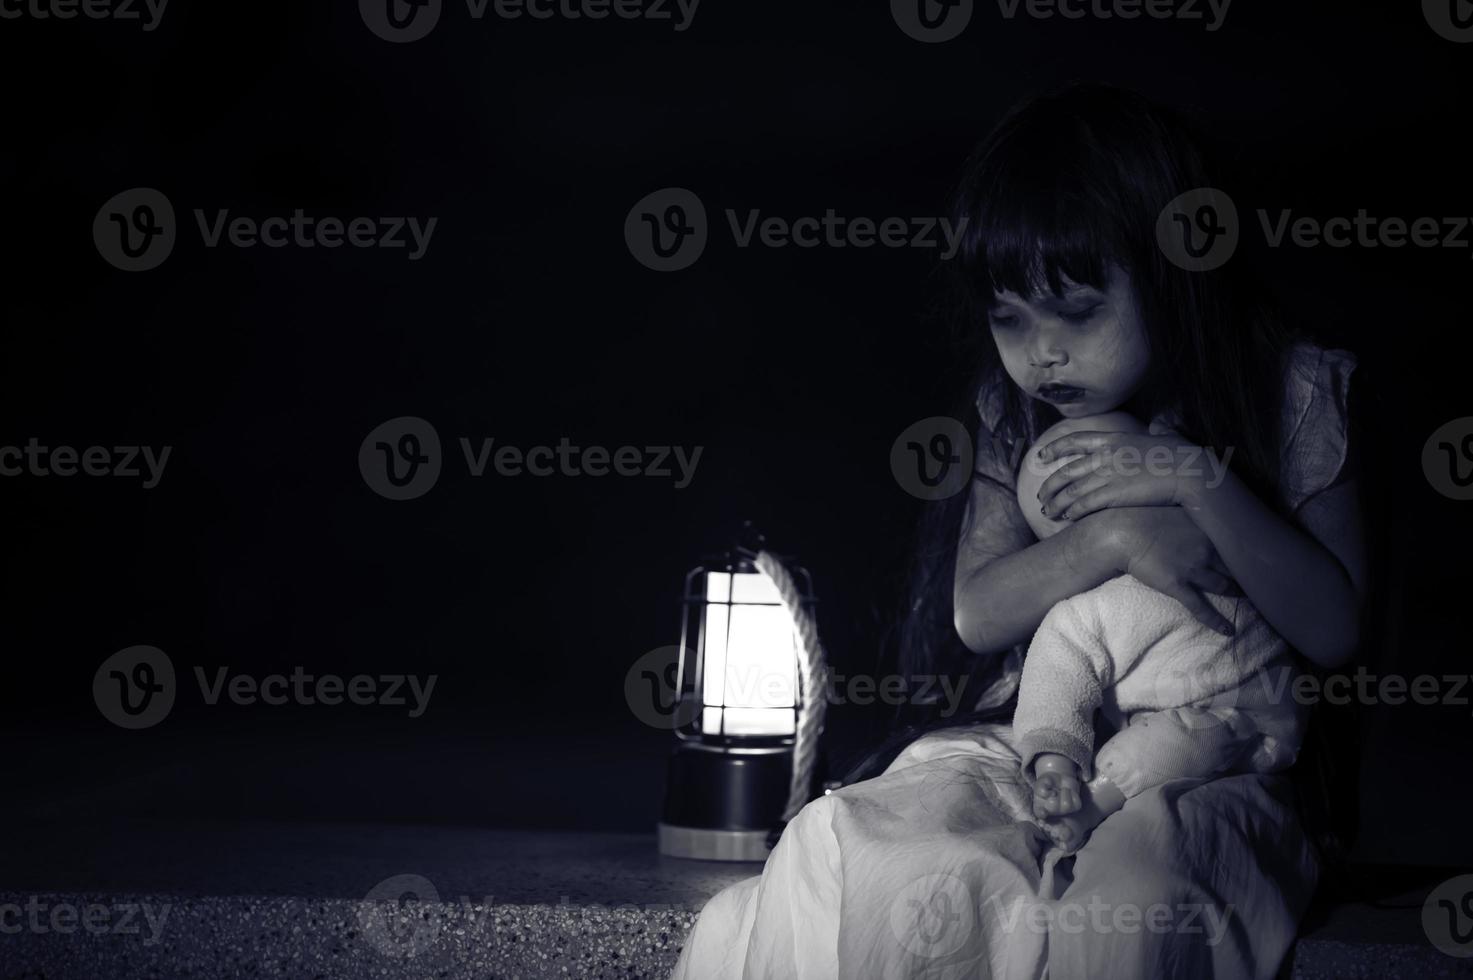 ledsen barn spöke på natt, halloween festival koncept, fredag 13:e, skräck film scen, a flicka med docka foto